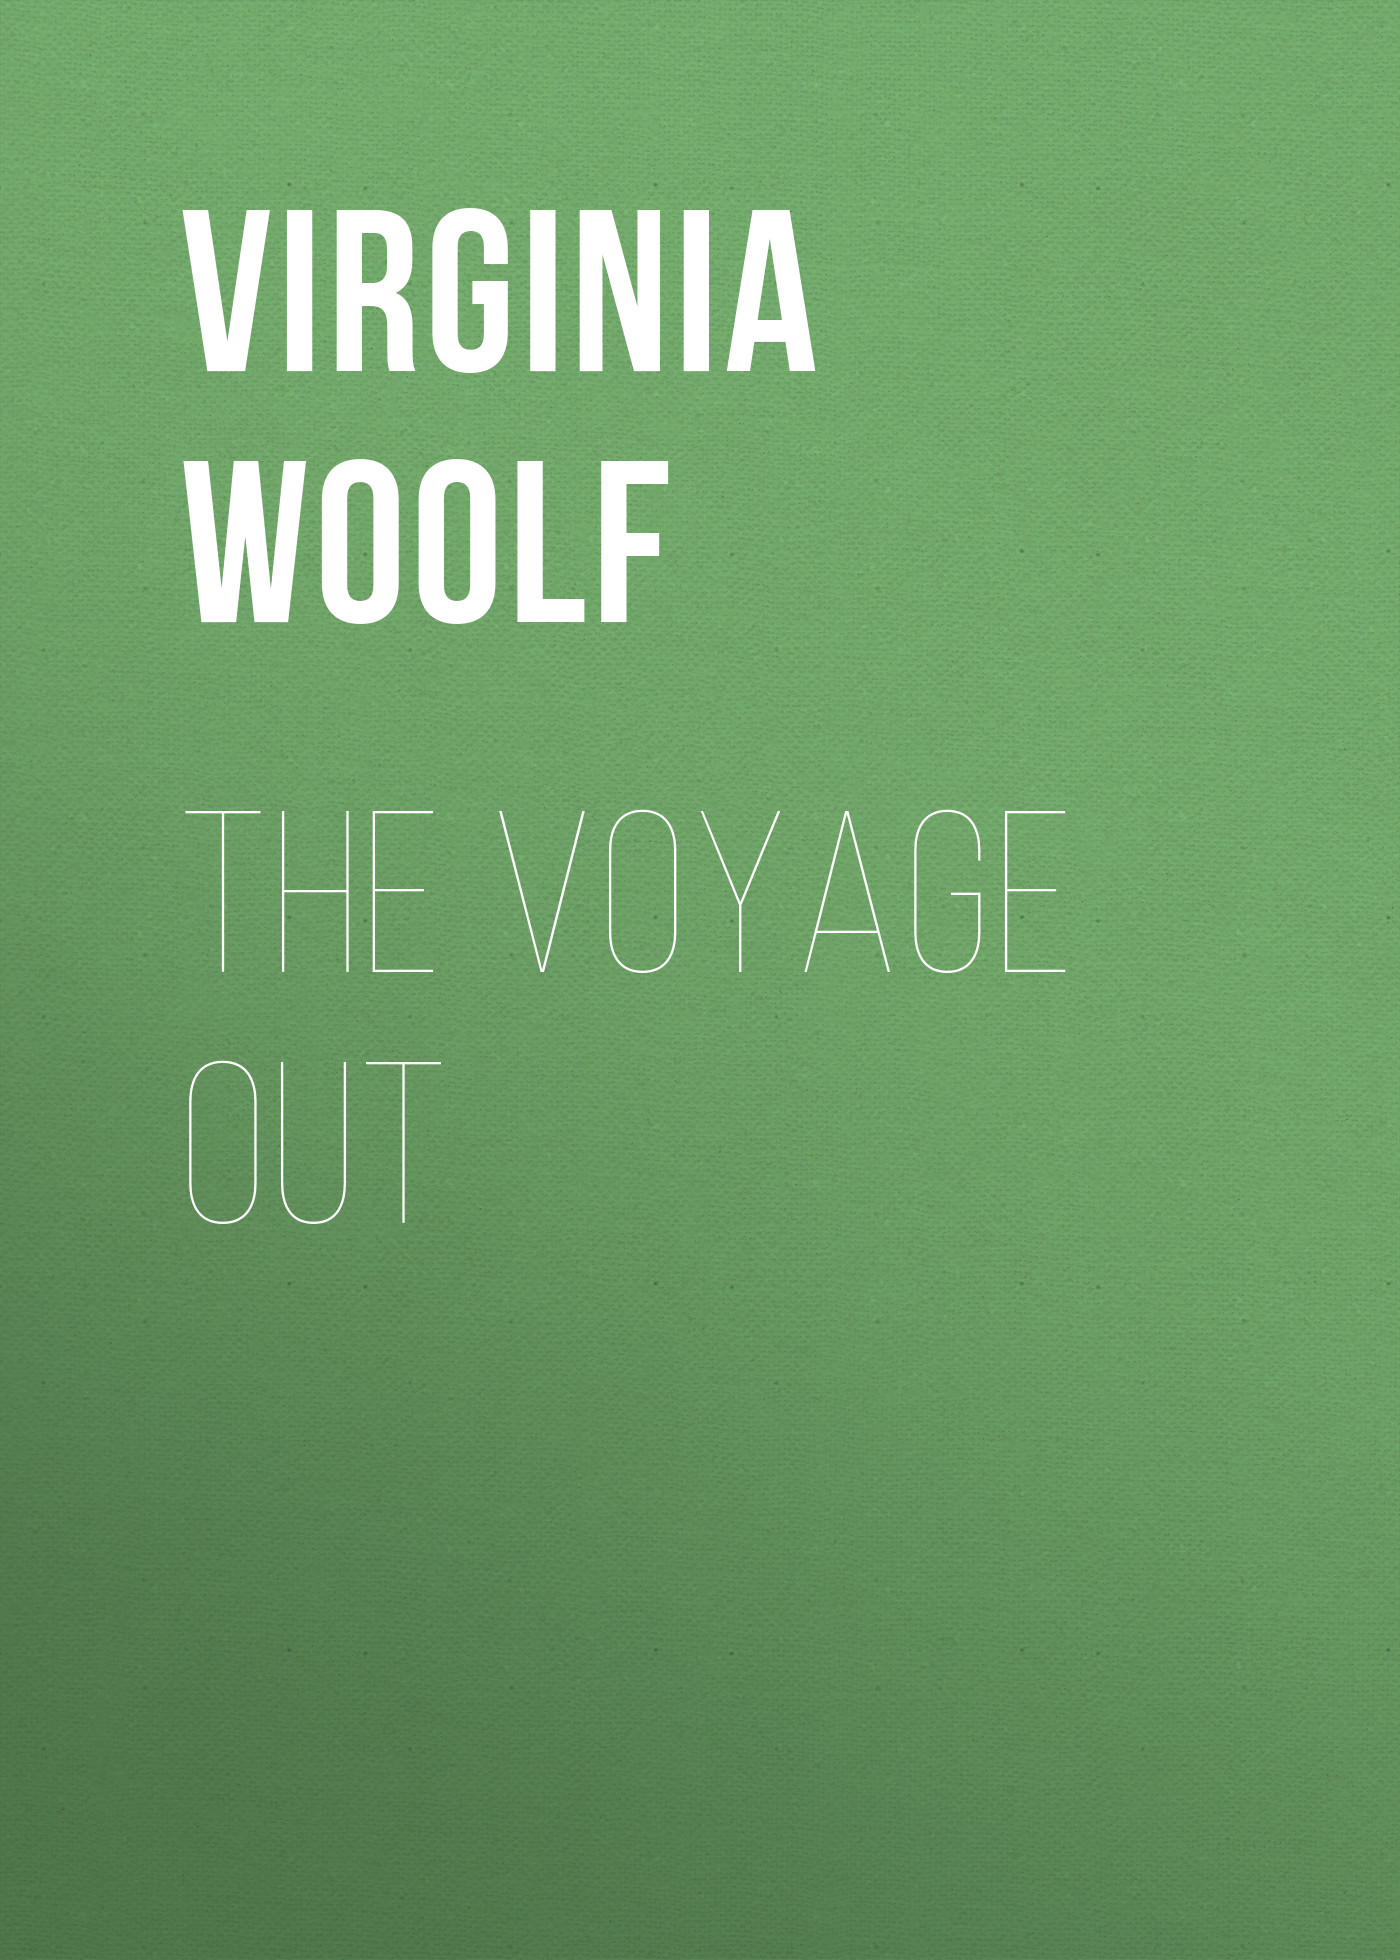 Книга The Voyage Out из серии , созданная Virginia Woolf, может относится к жанру Литература 20 века, Зарубежная классика, Зарубежные любовные романы. Стоимость электронной книги The Voyage Out с идентификатором 25560268 составляет 0 руб.